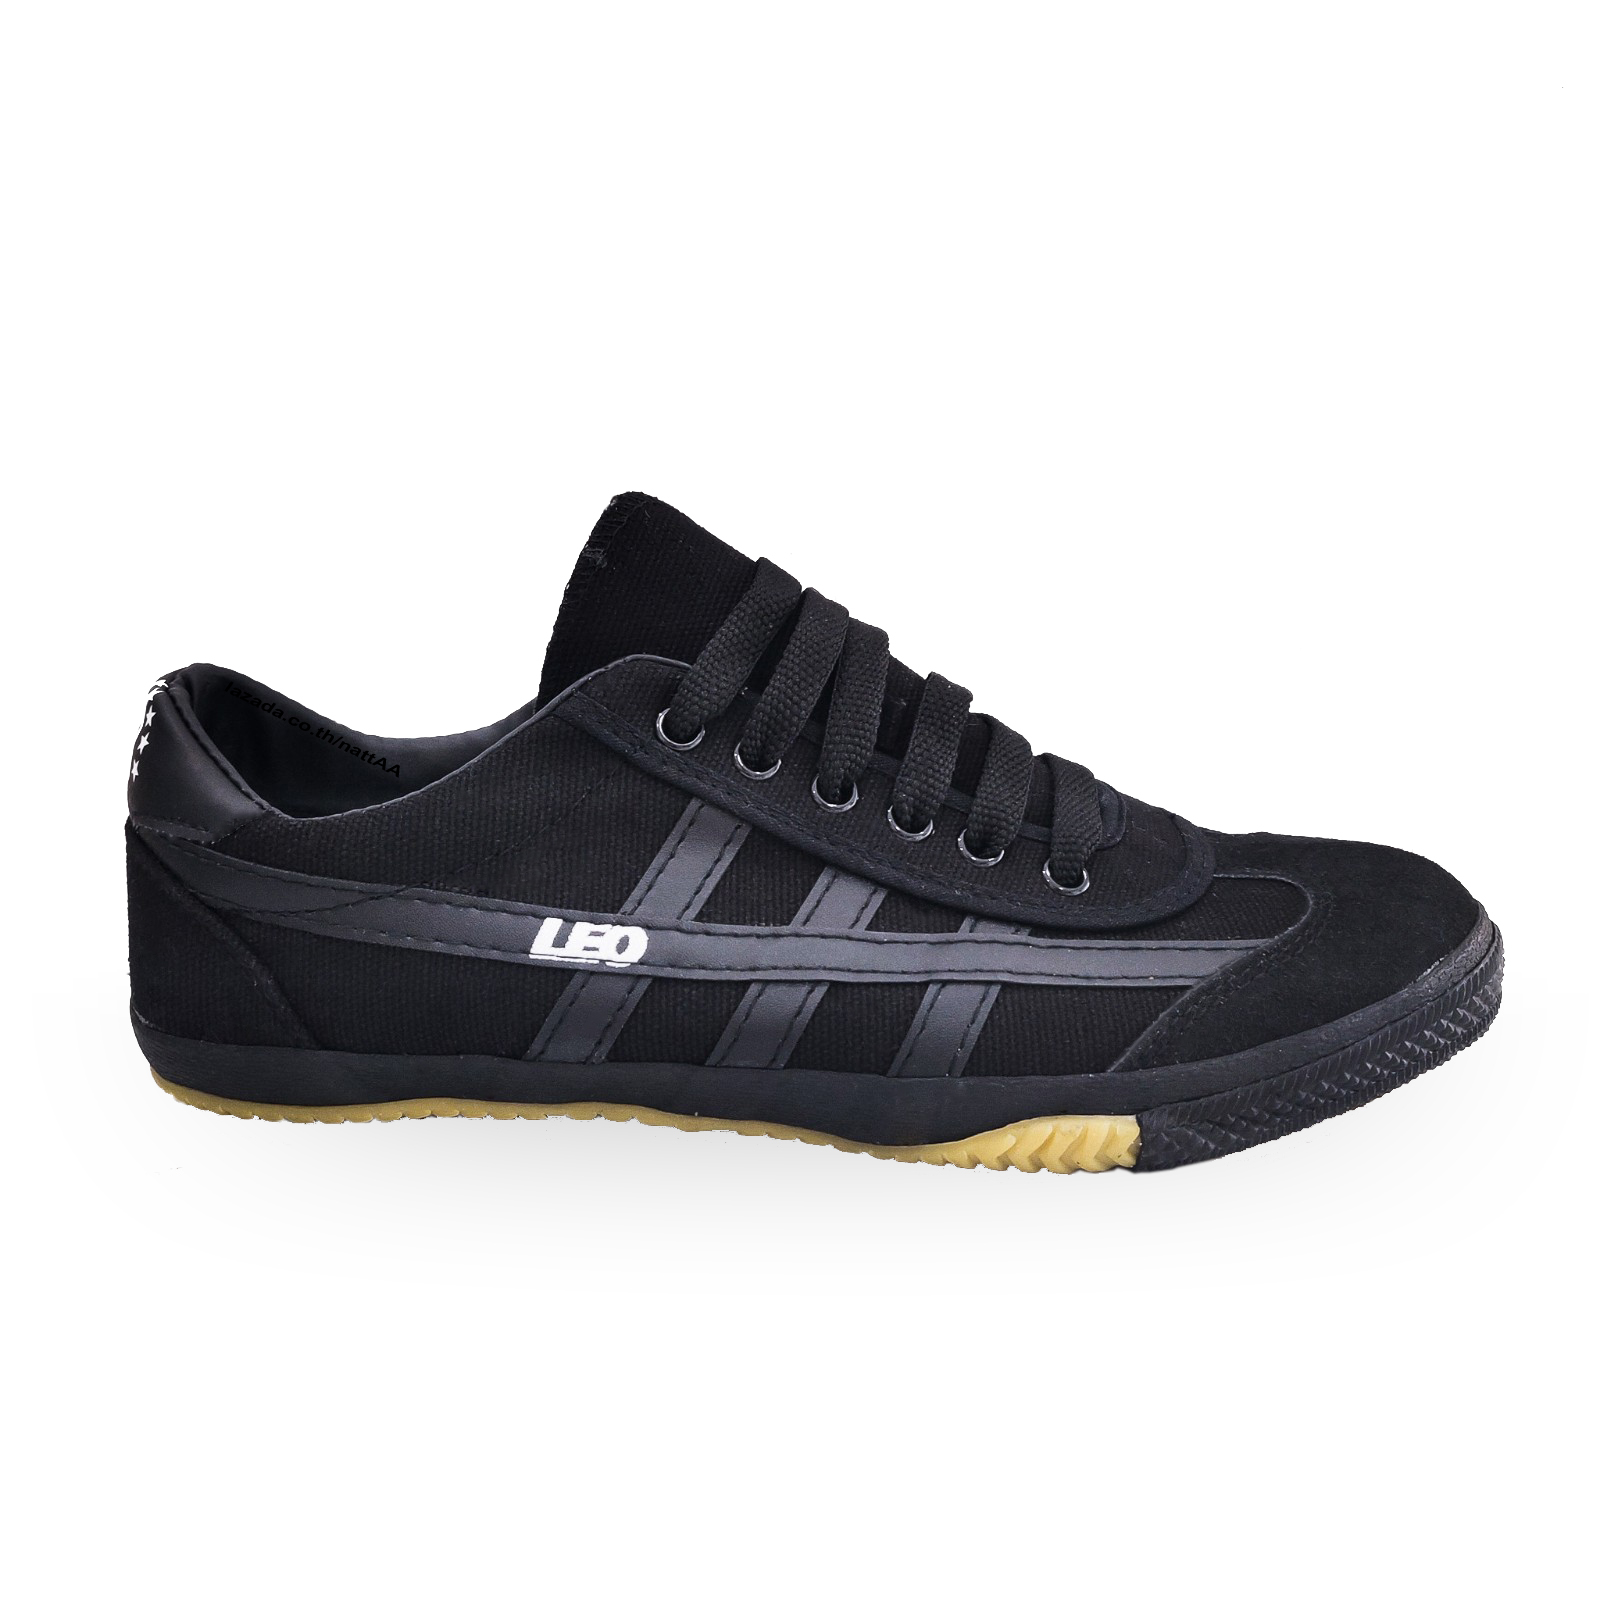 รองเท้า Leo ลีโอ - ผ้าใบสีดำ พื้นยางดิบ ทรงเรียว ฟุตซอลF70 - รองเท้าทำงานสีดำ ผูกเชือก